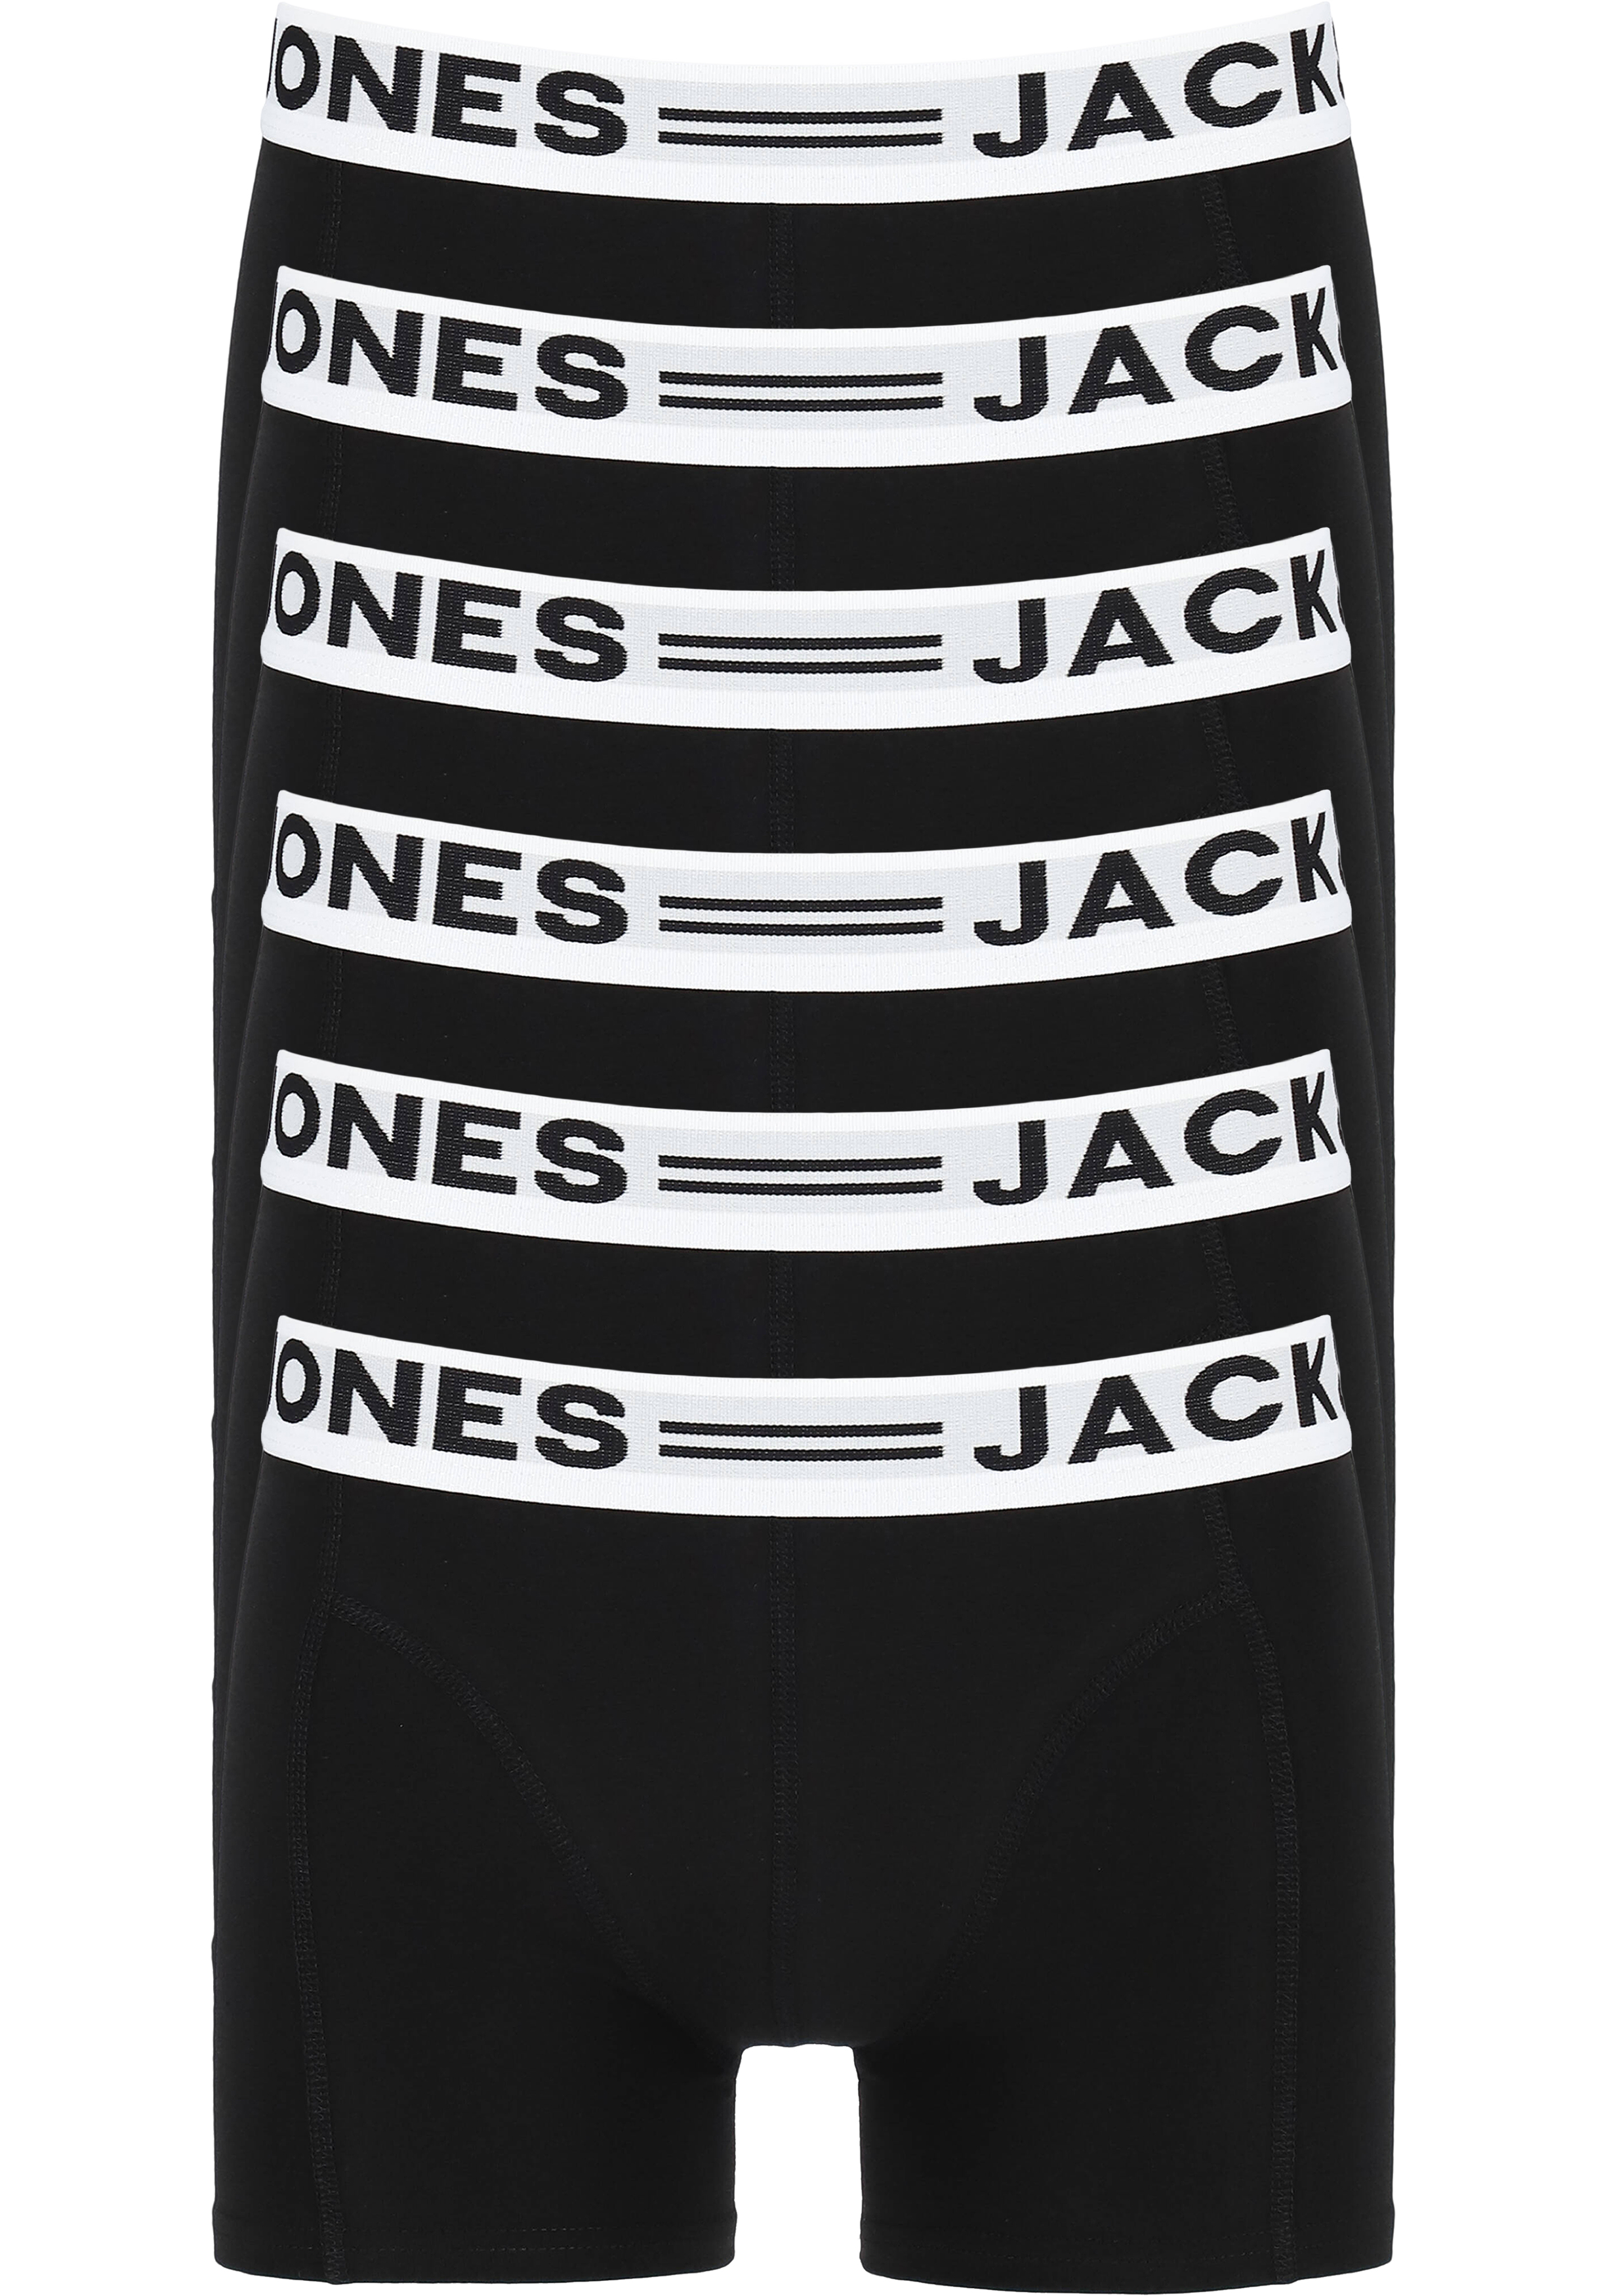 Instrument Noord West Lui JACK & JONES boxers Sense trunks (6-pack), zwart - Shop de nieuwste  voorjaarsmode